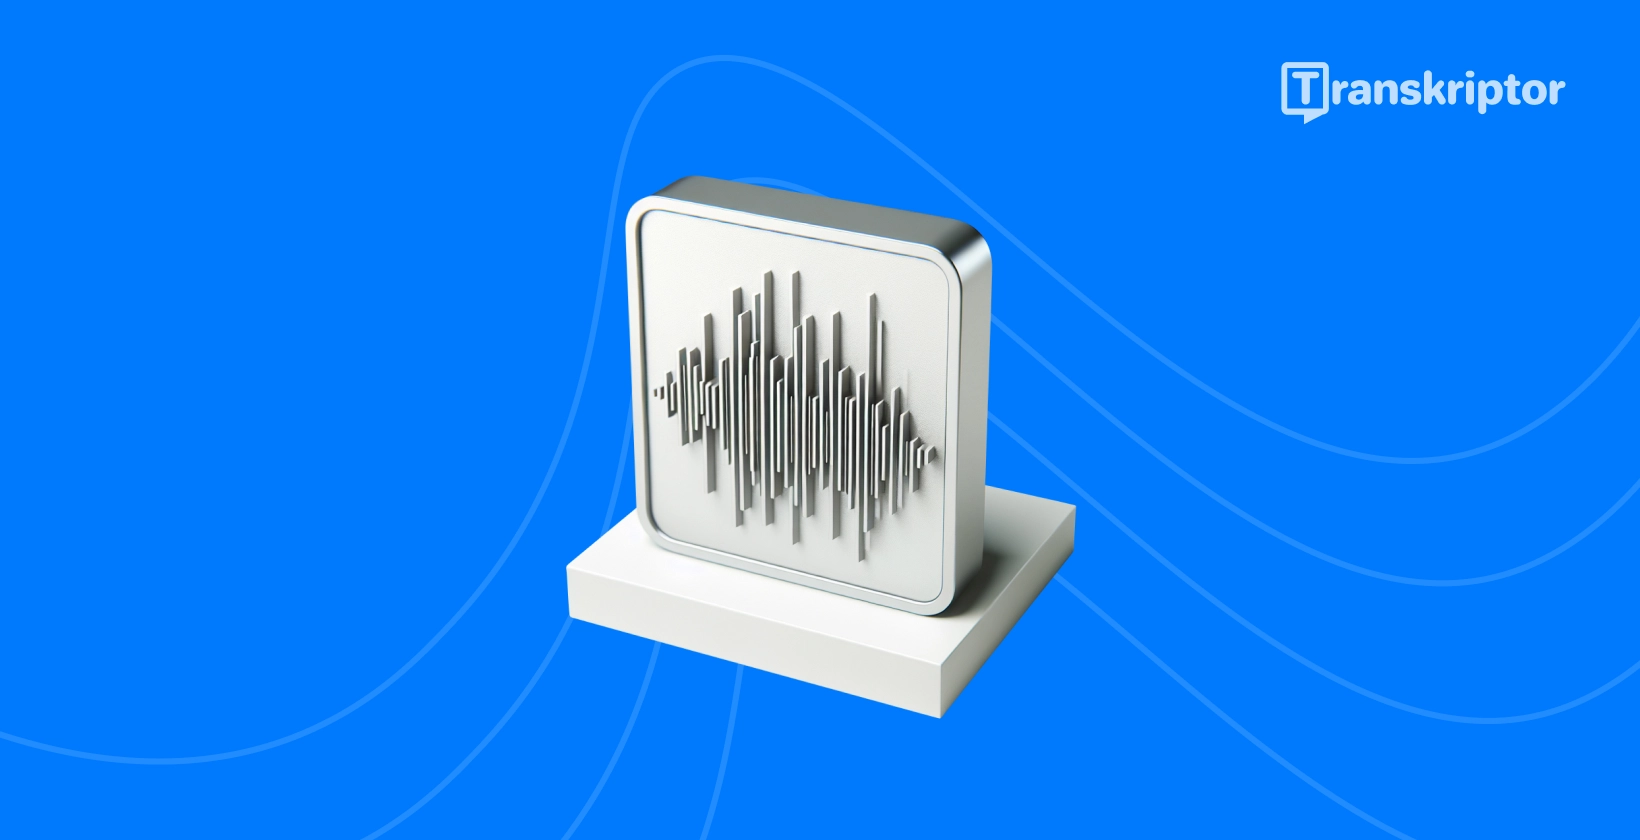 Skaņas viļņu ilustrācija monitorā attēlo tiešraides audio transkripcijas procesu, kā aprakstīts ceļvedī.